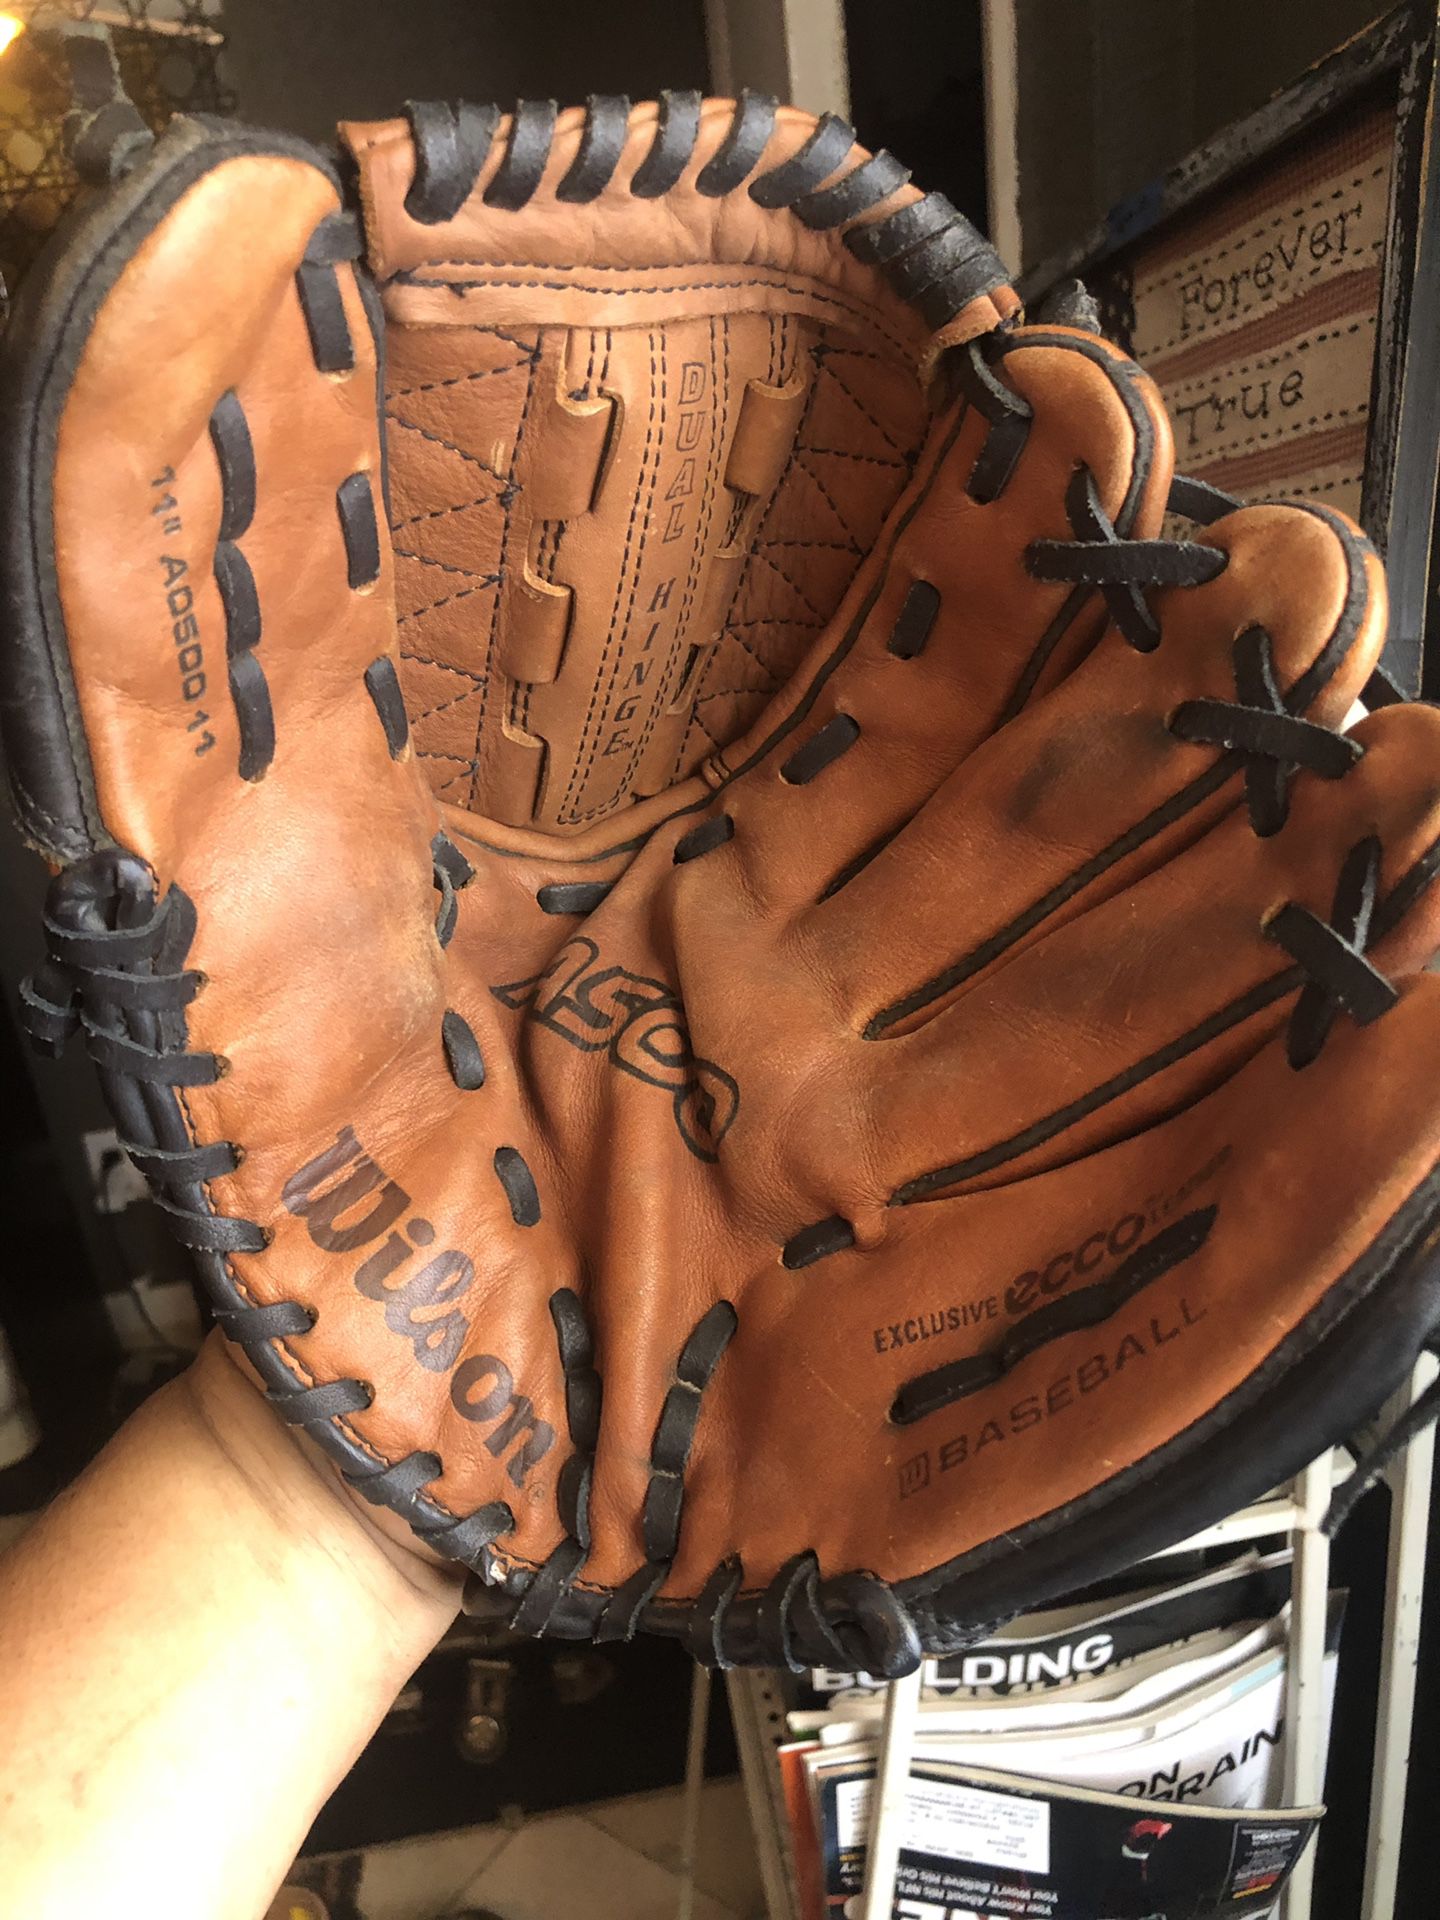 Wilson infilled baseball ⚾️ glove